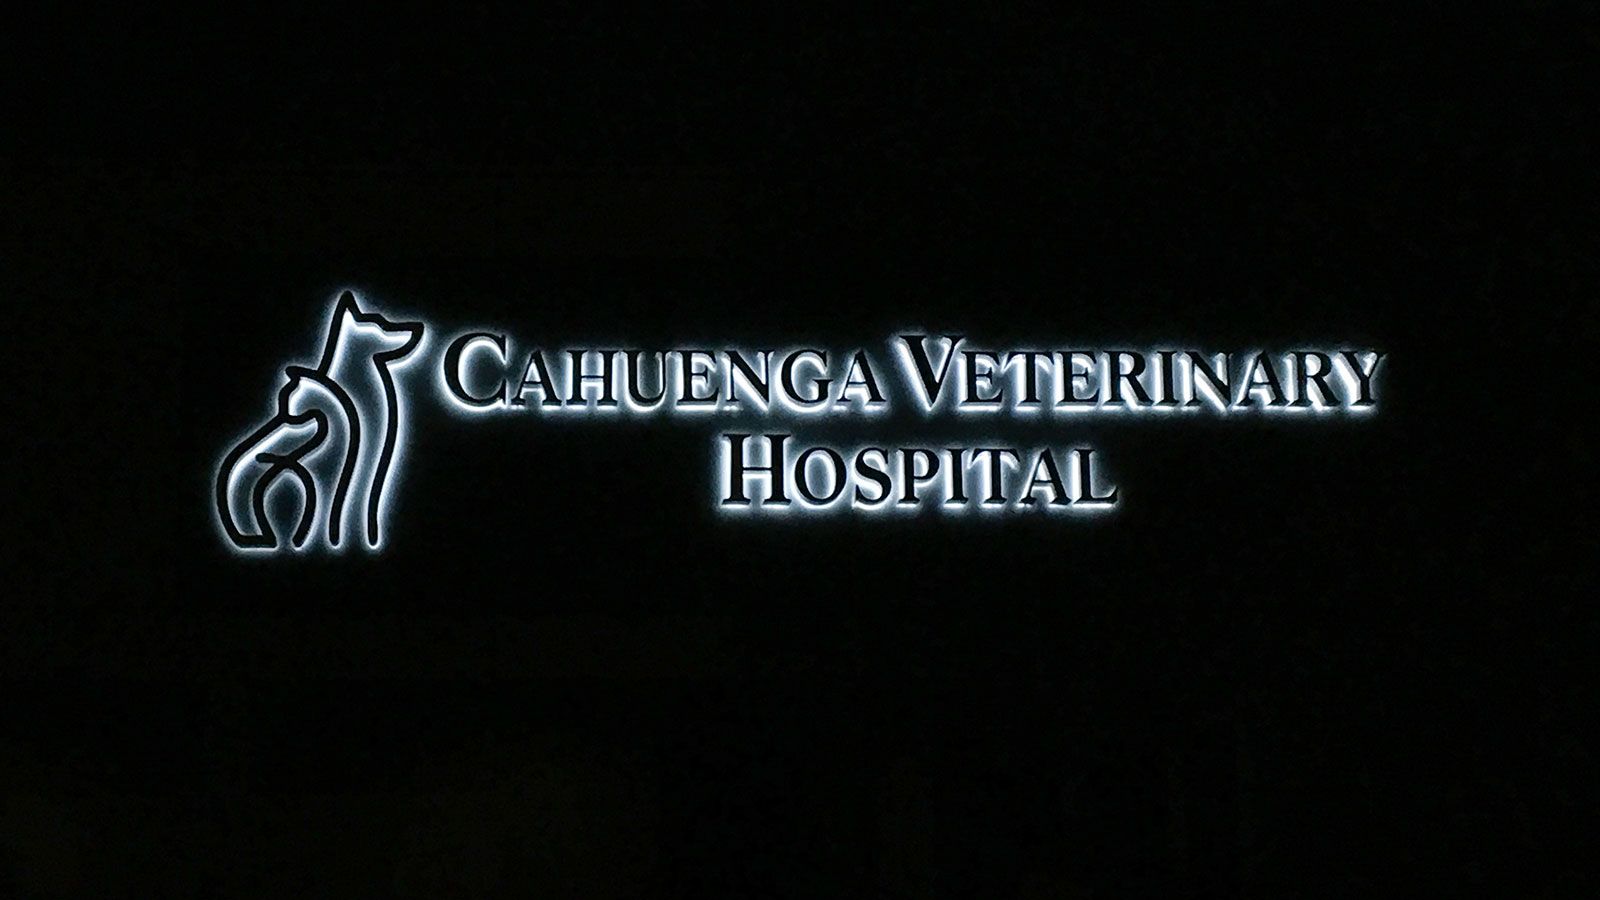 Veterinary hospital backlit letters